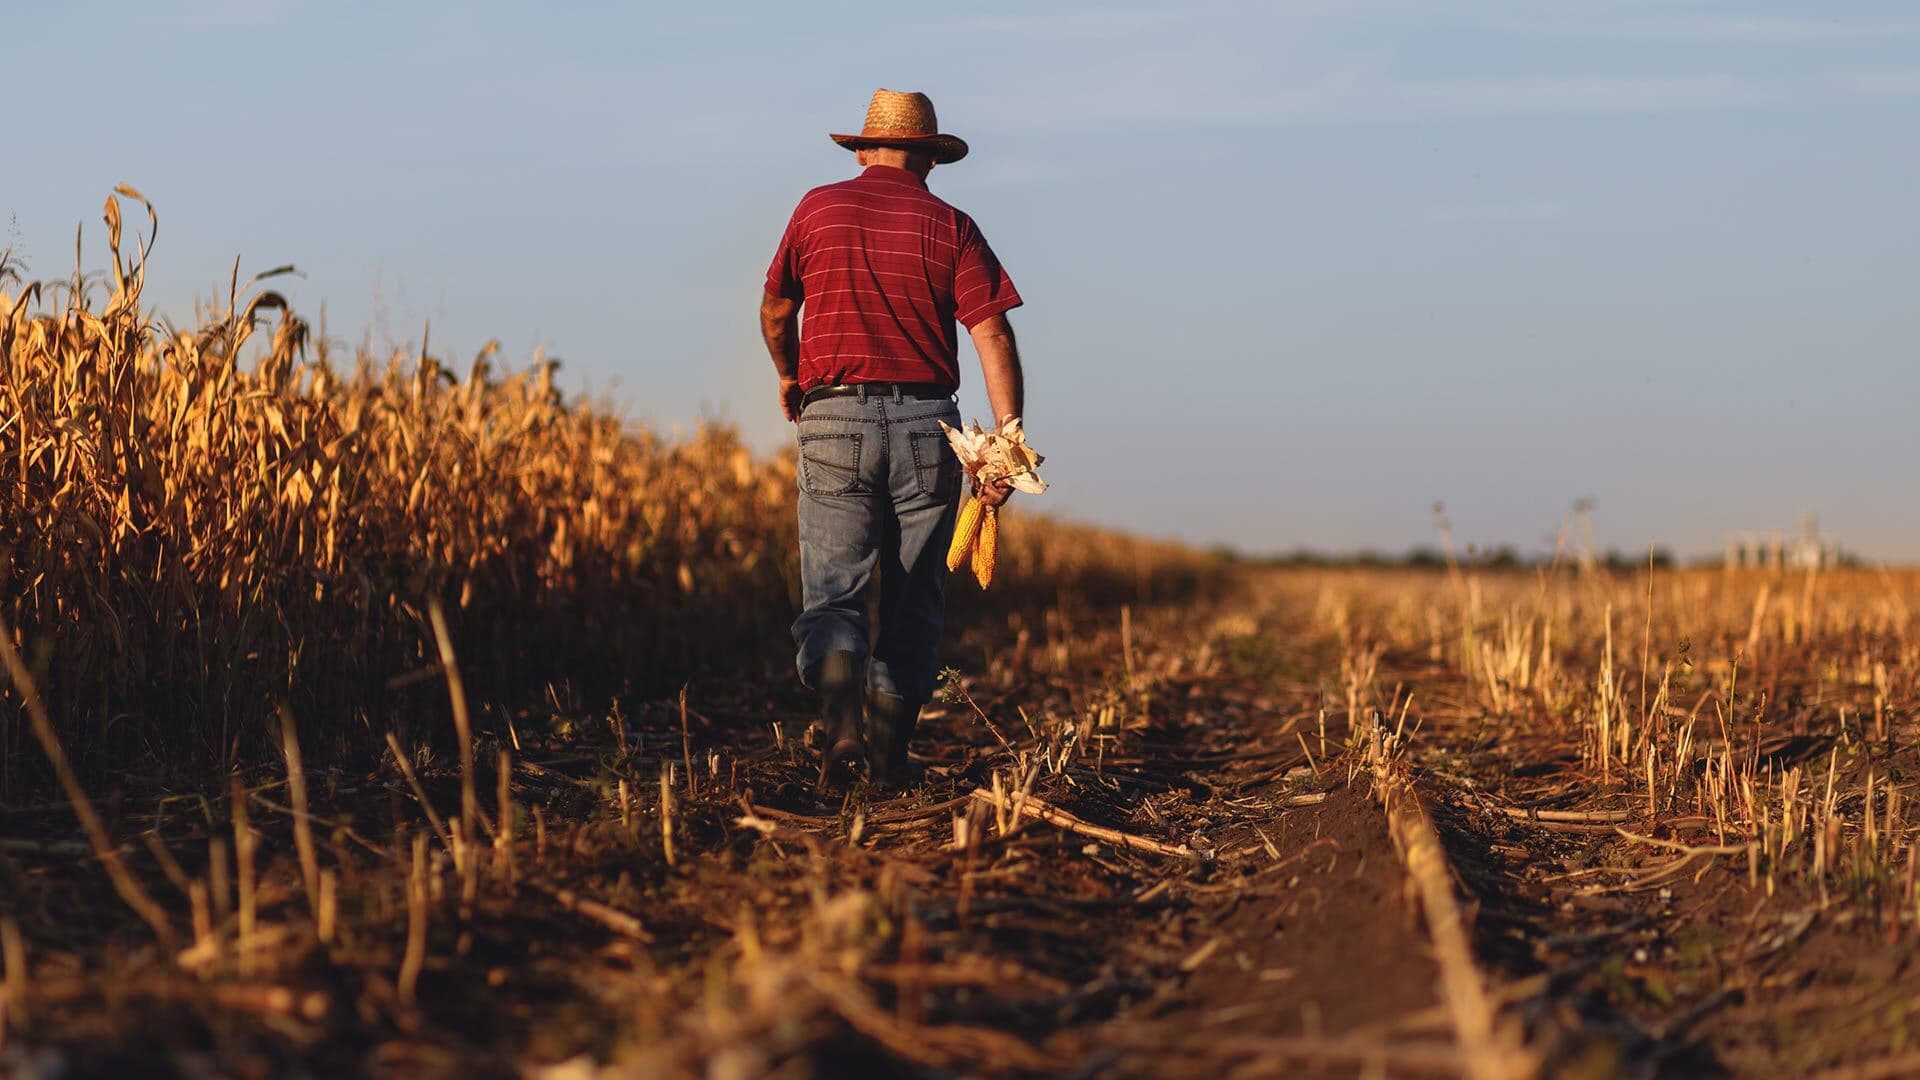 A red-shirted farmer walks through a partially cut cornfield